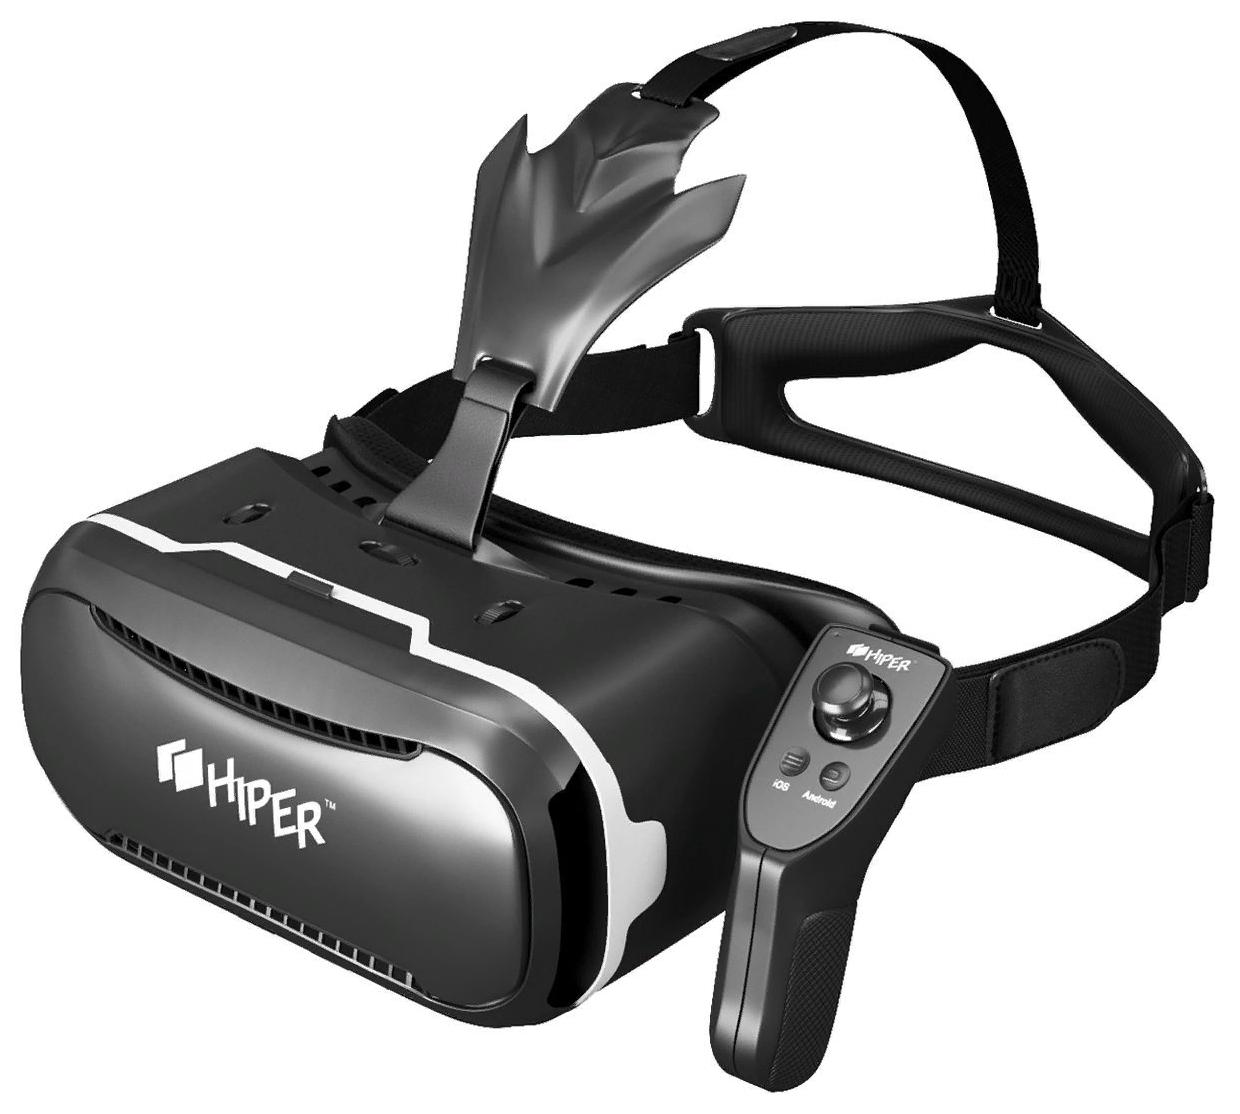 Компьютерный vr. Очки виртуальной реальности Hiper VR. Очки виртуальной реальности Hiper VR Max. Очки виртуальной реальности Hyper VRQ. Виртуальные очки для смартфона Hiper VRQ.